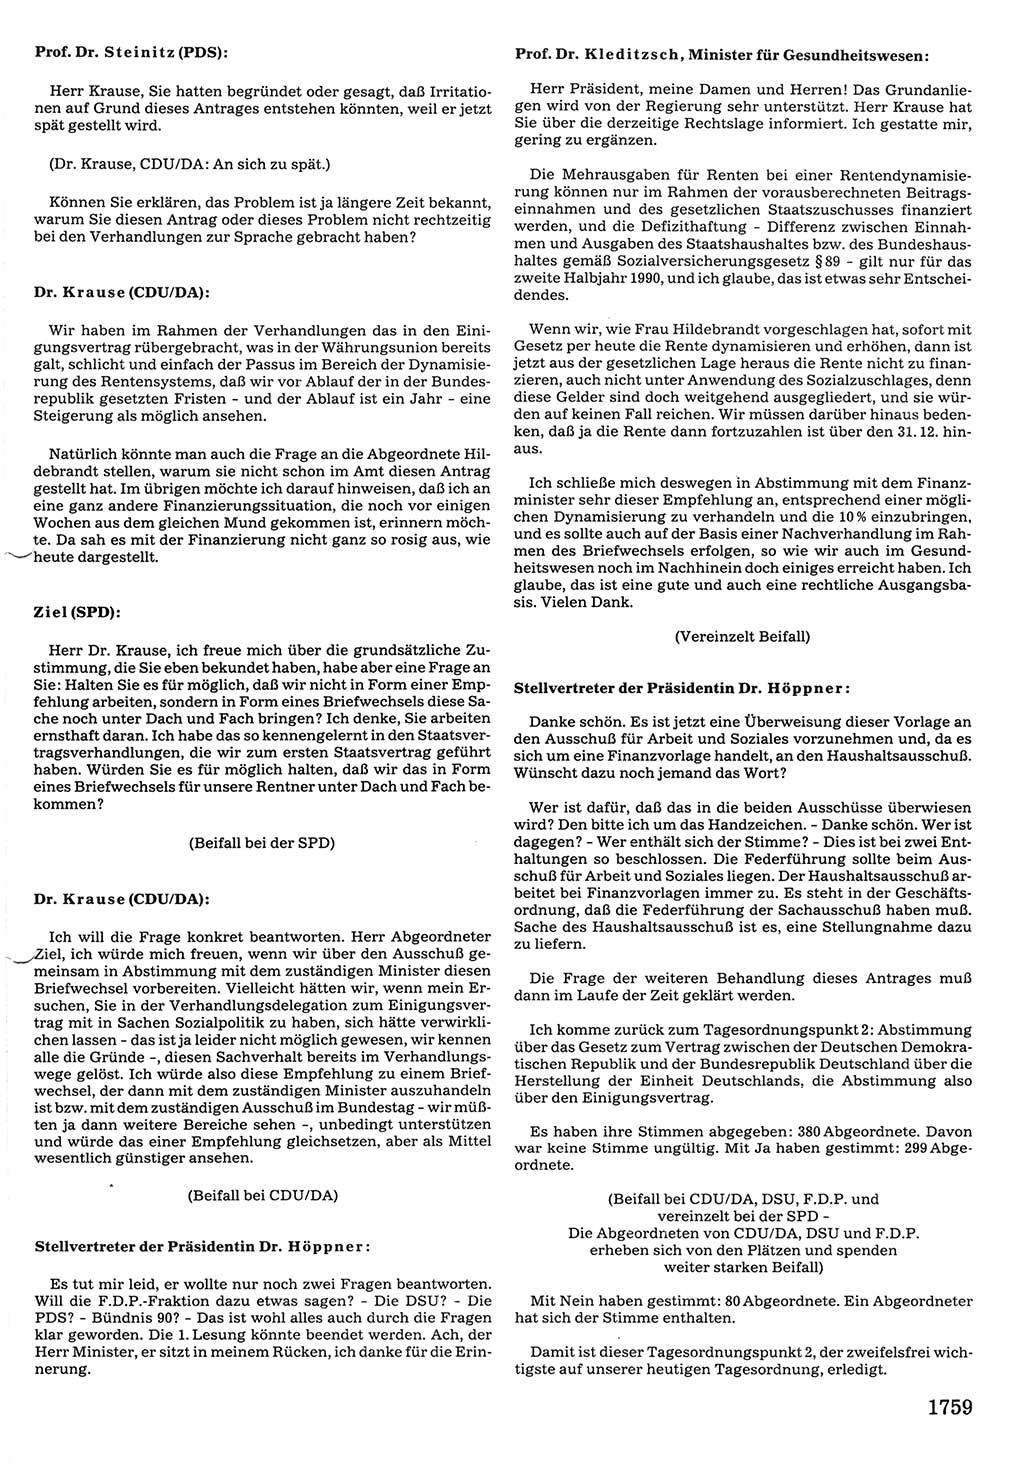 Tagungen der Volkskammer (VK) der Deutschen Demokratischen Republik (DDR), 10. Wahlperiode 1990, Seite 1759 (VK. DDR 10. WP. 1990, Prot. Tg. 1-38, 5.4.-2.10.1990, S. 1759)